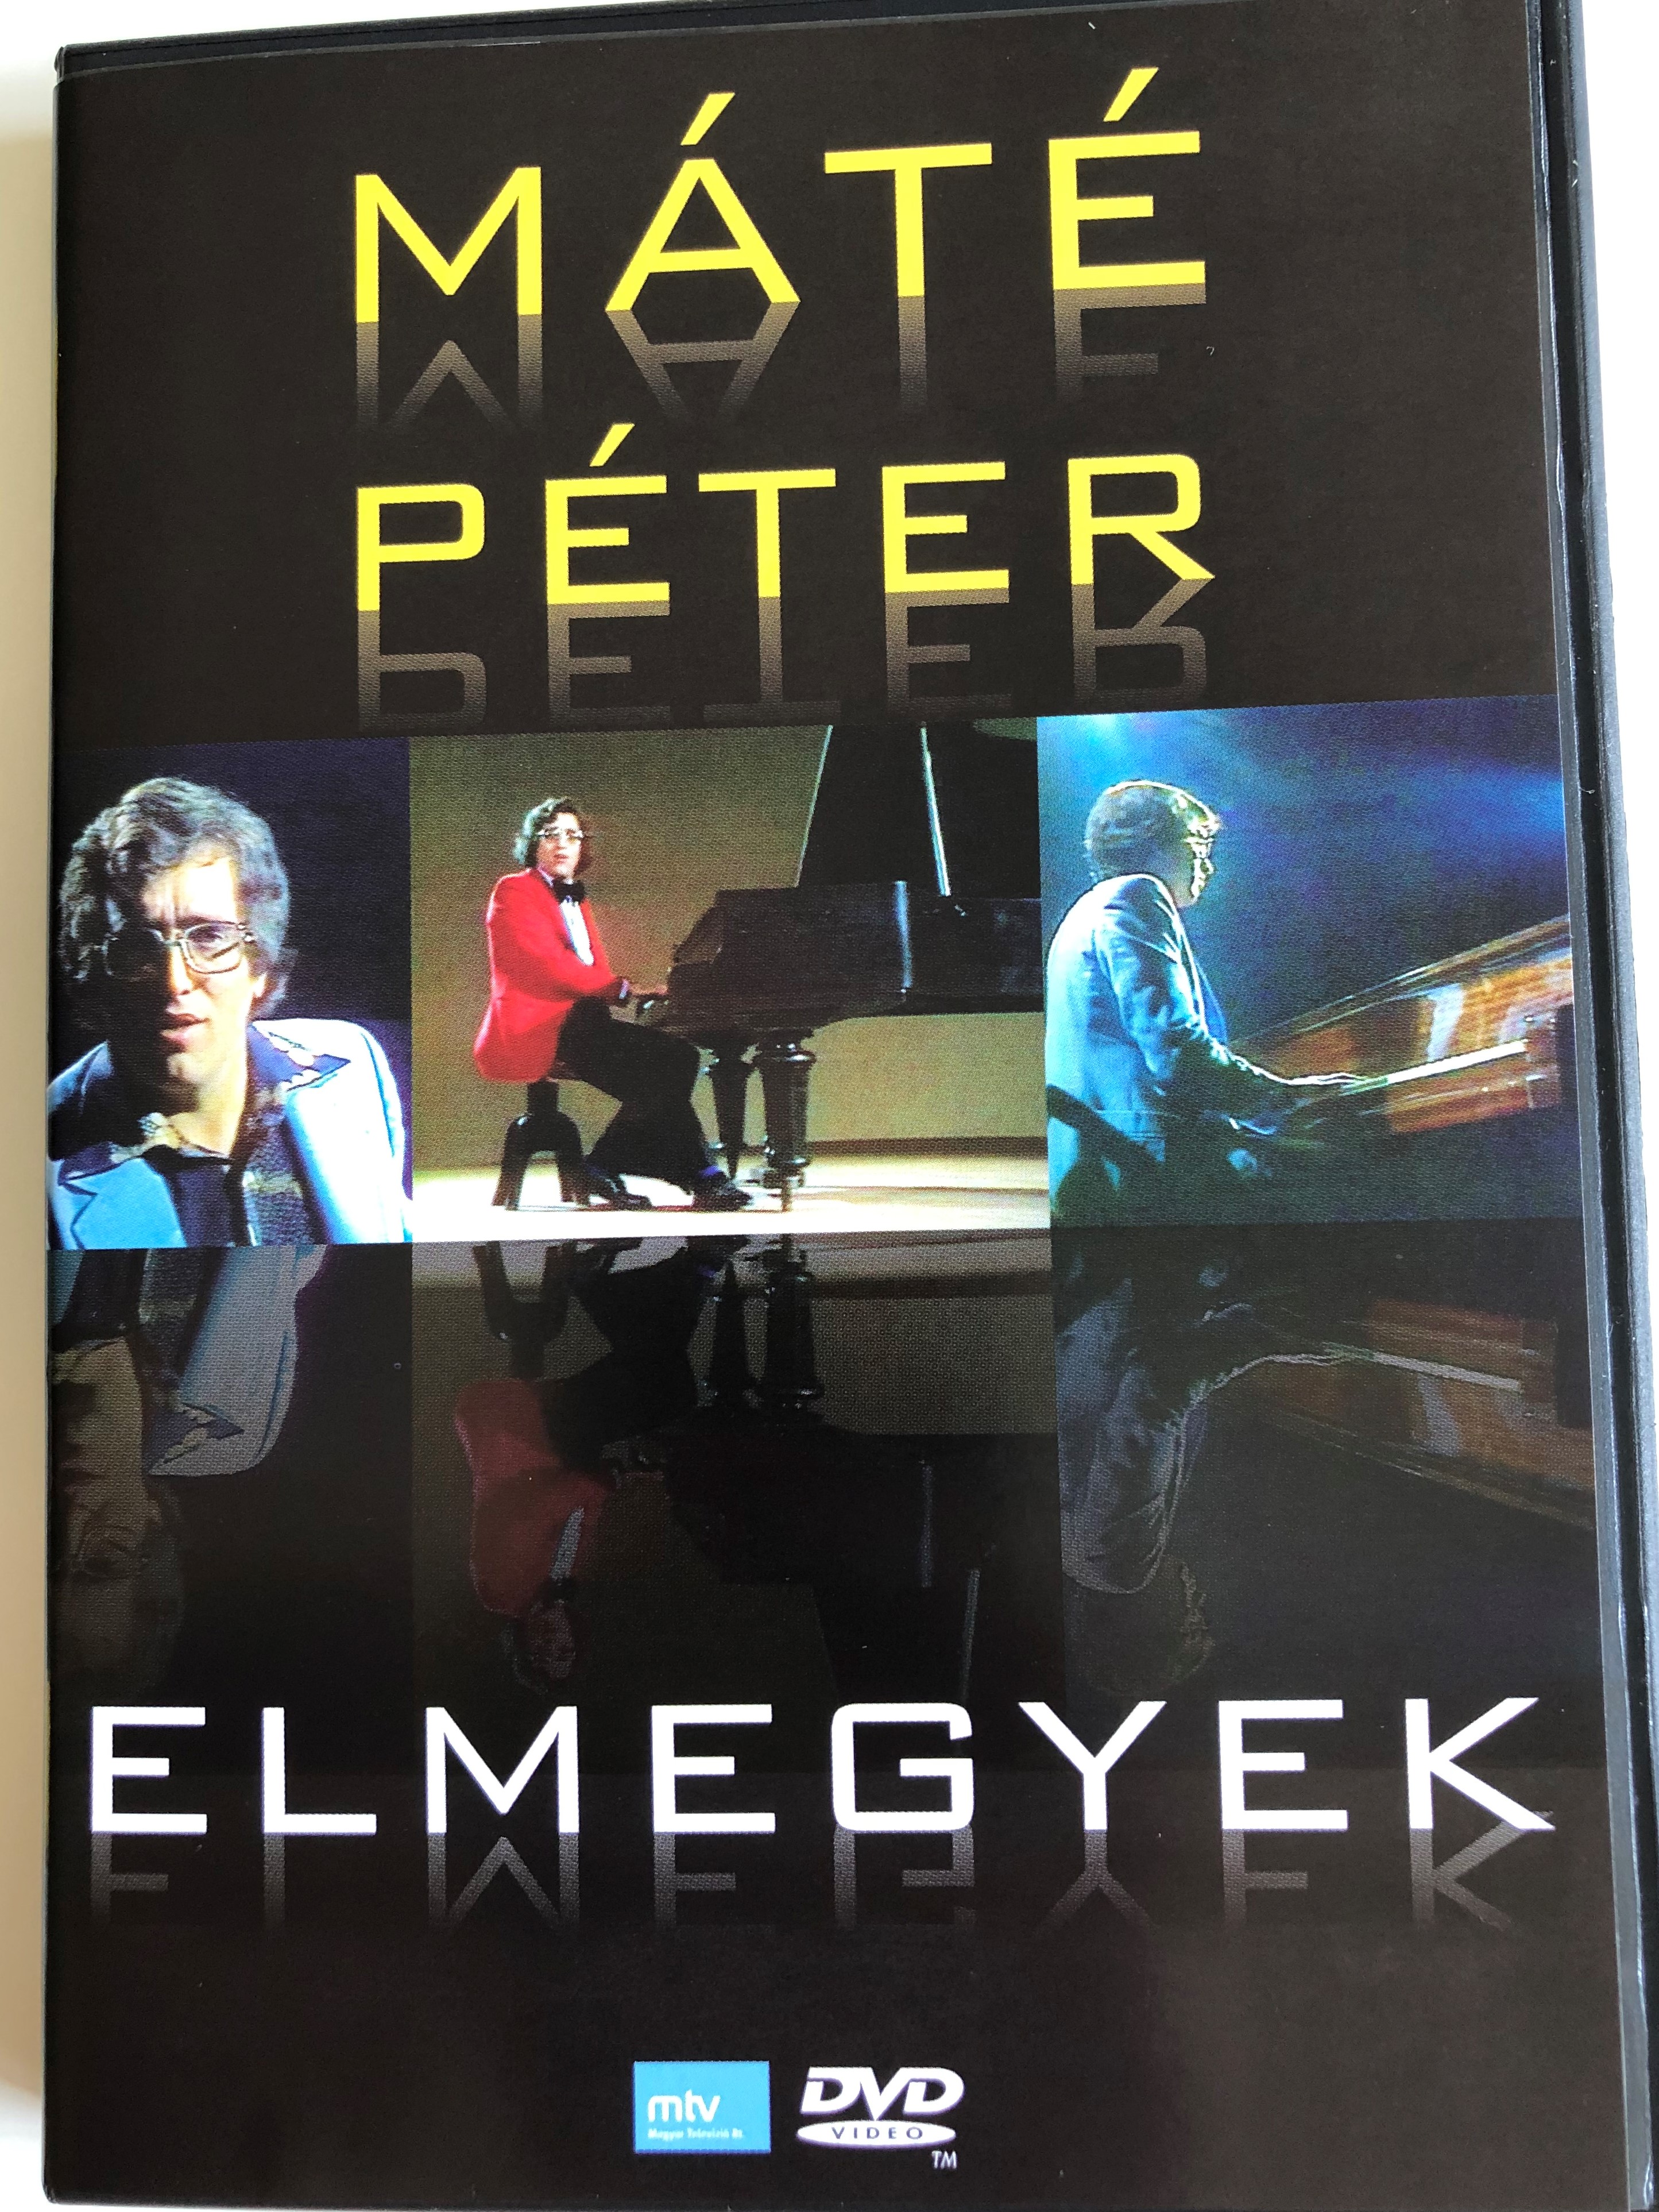 m-t-p-ter-elmegyek-dvd-2009-eur-pa-records-er9033-great-hits-from-the-famous-singer-1-.jpg